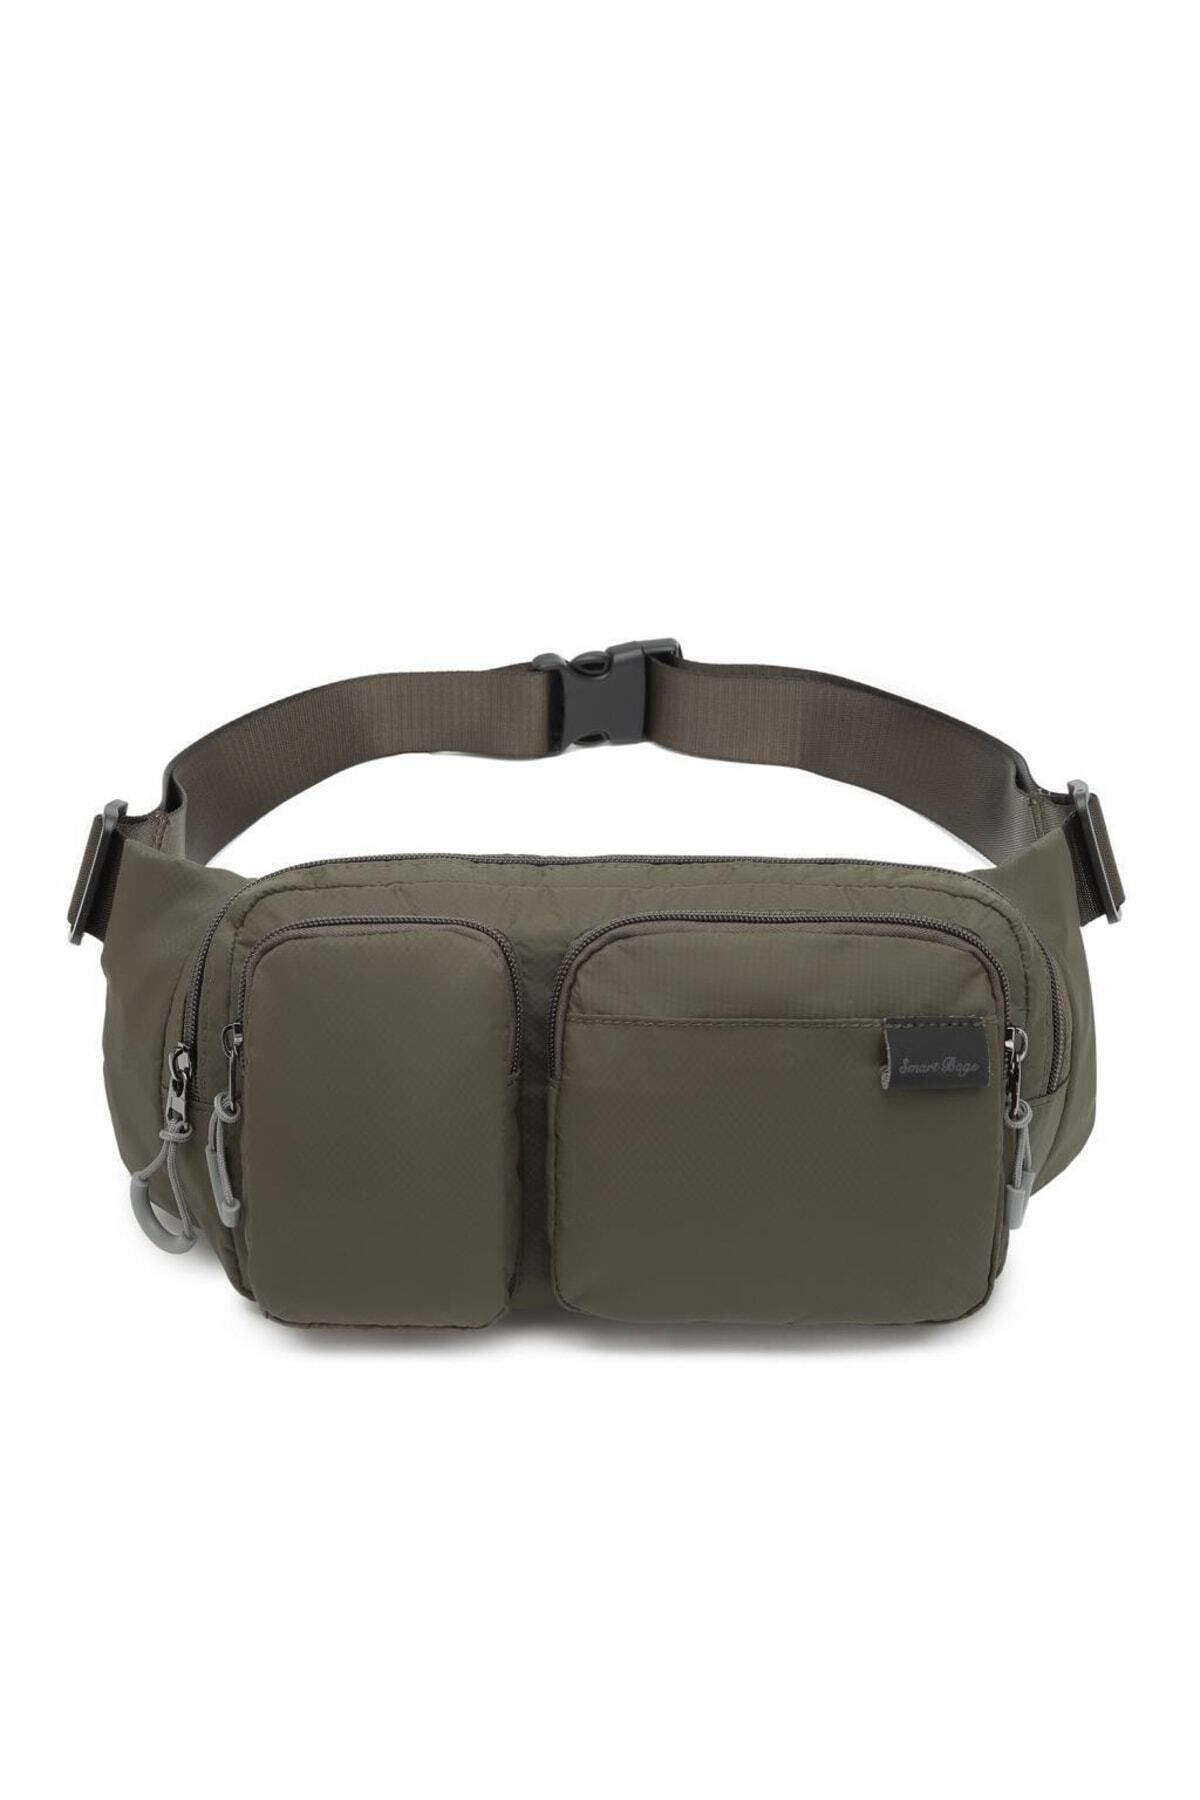 Smart Bags Ekstra Hafif Kumaş Uniseks Bodybag Bel Çantası 3150